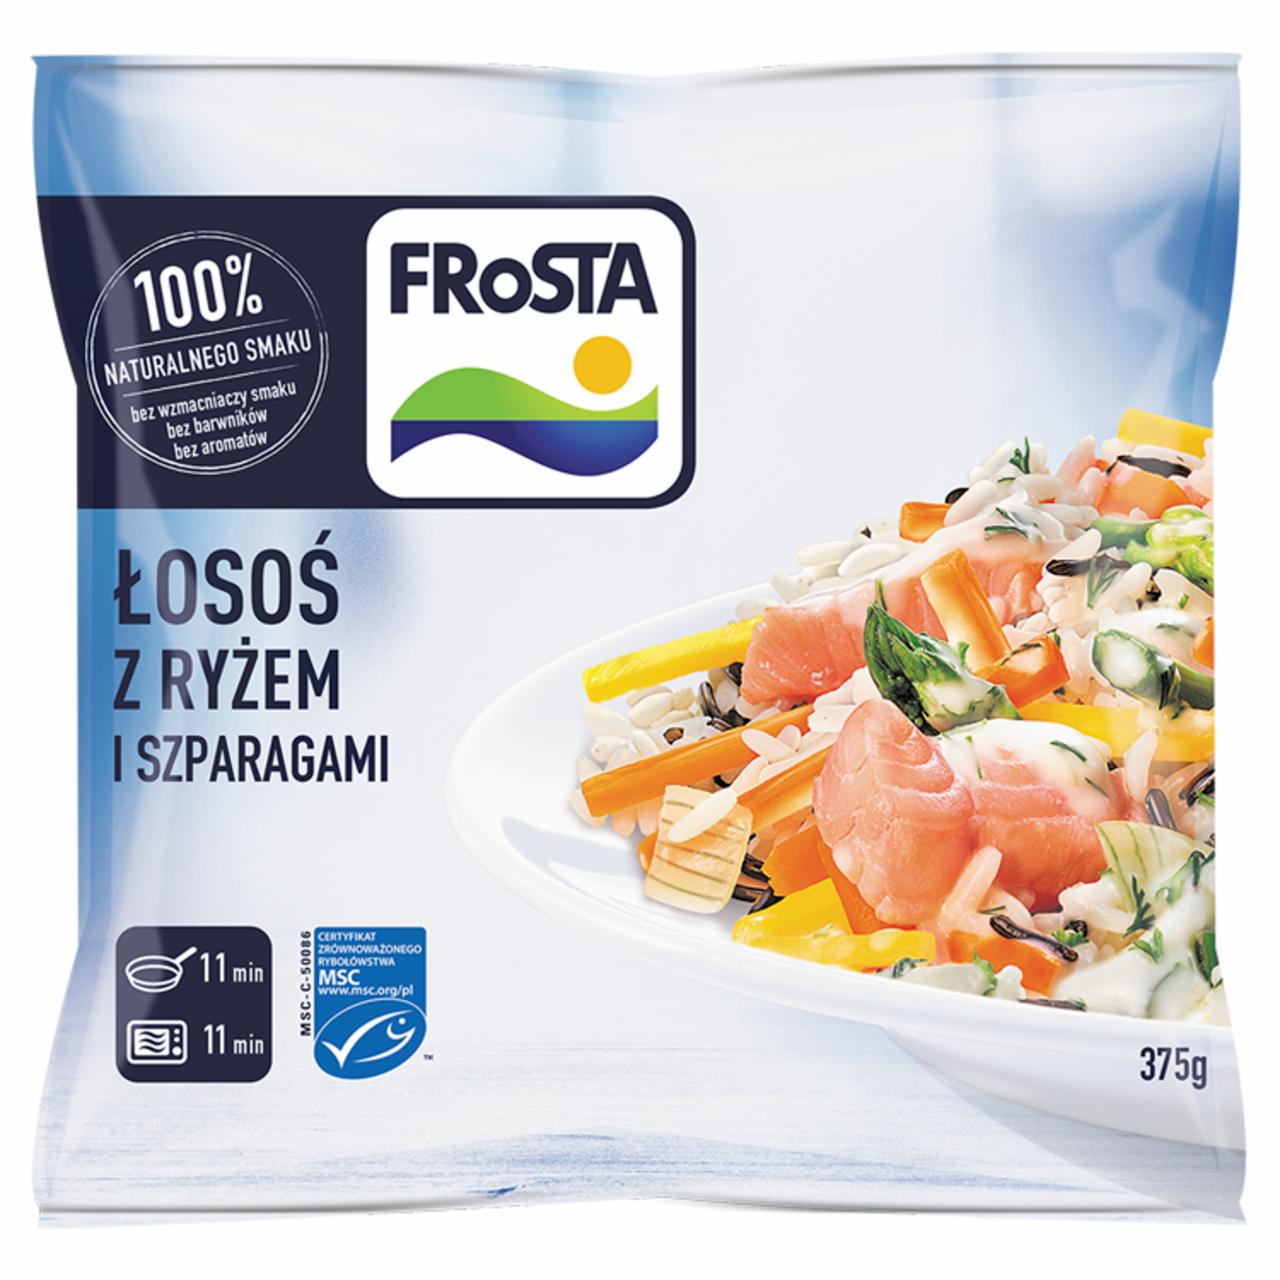 Zdjęcia - FRoSTA Łosoś z ryżem i szparagami 375 g